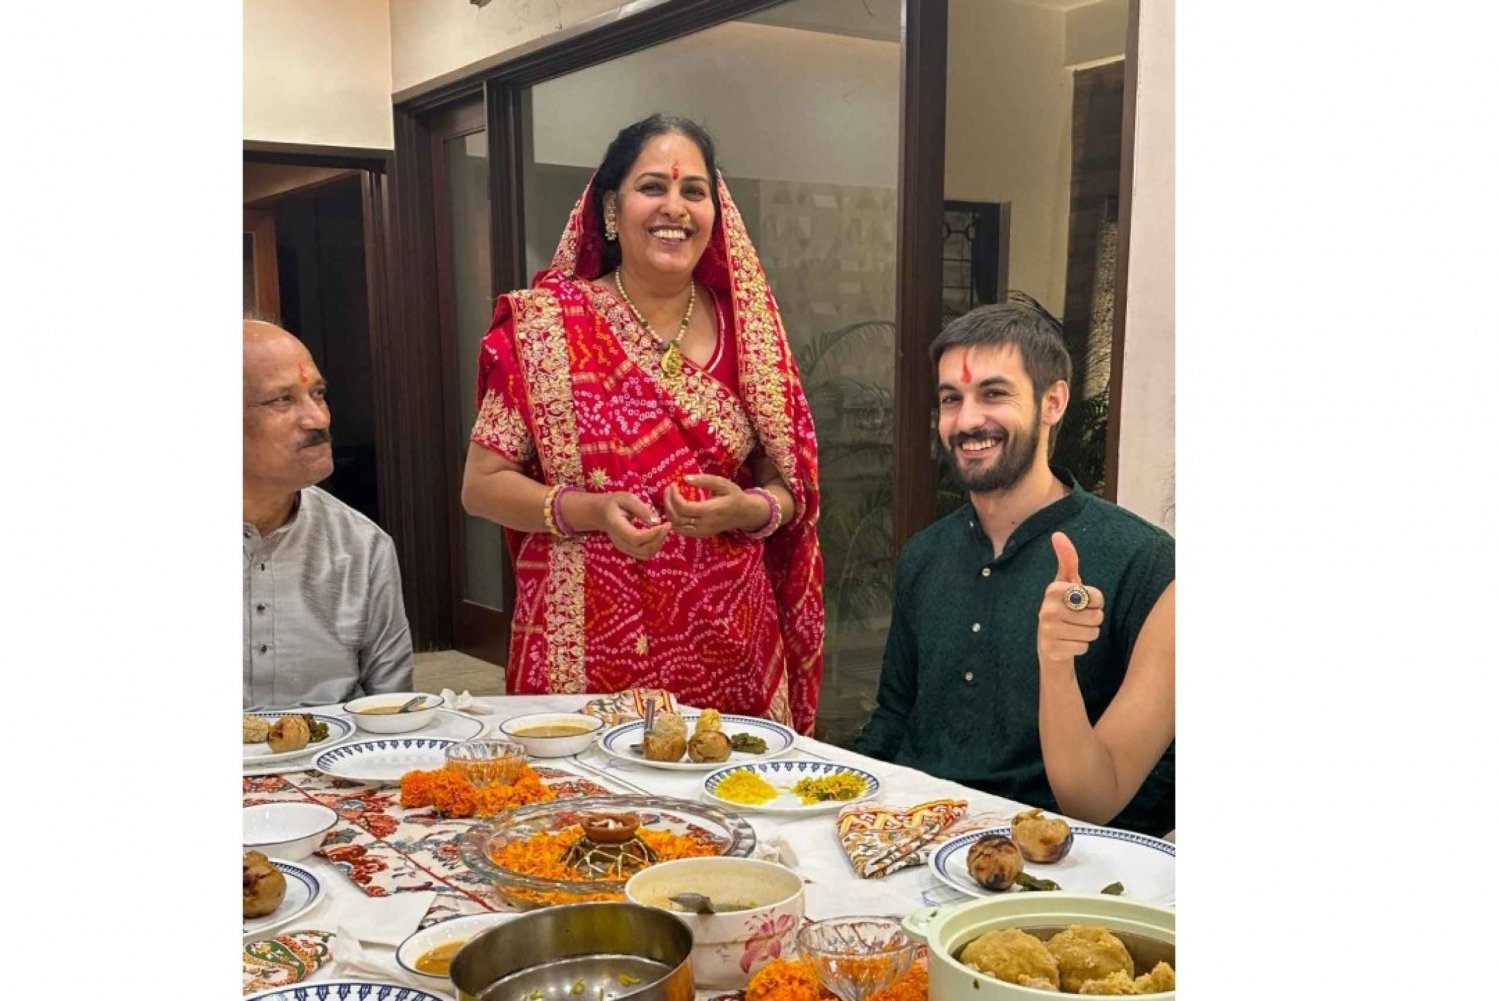 Jaipur: Perinteinen ruoanlaittokurssi ja tarinankerronta